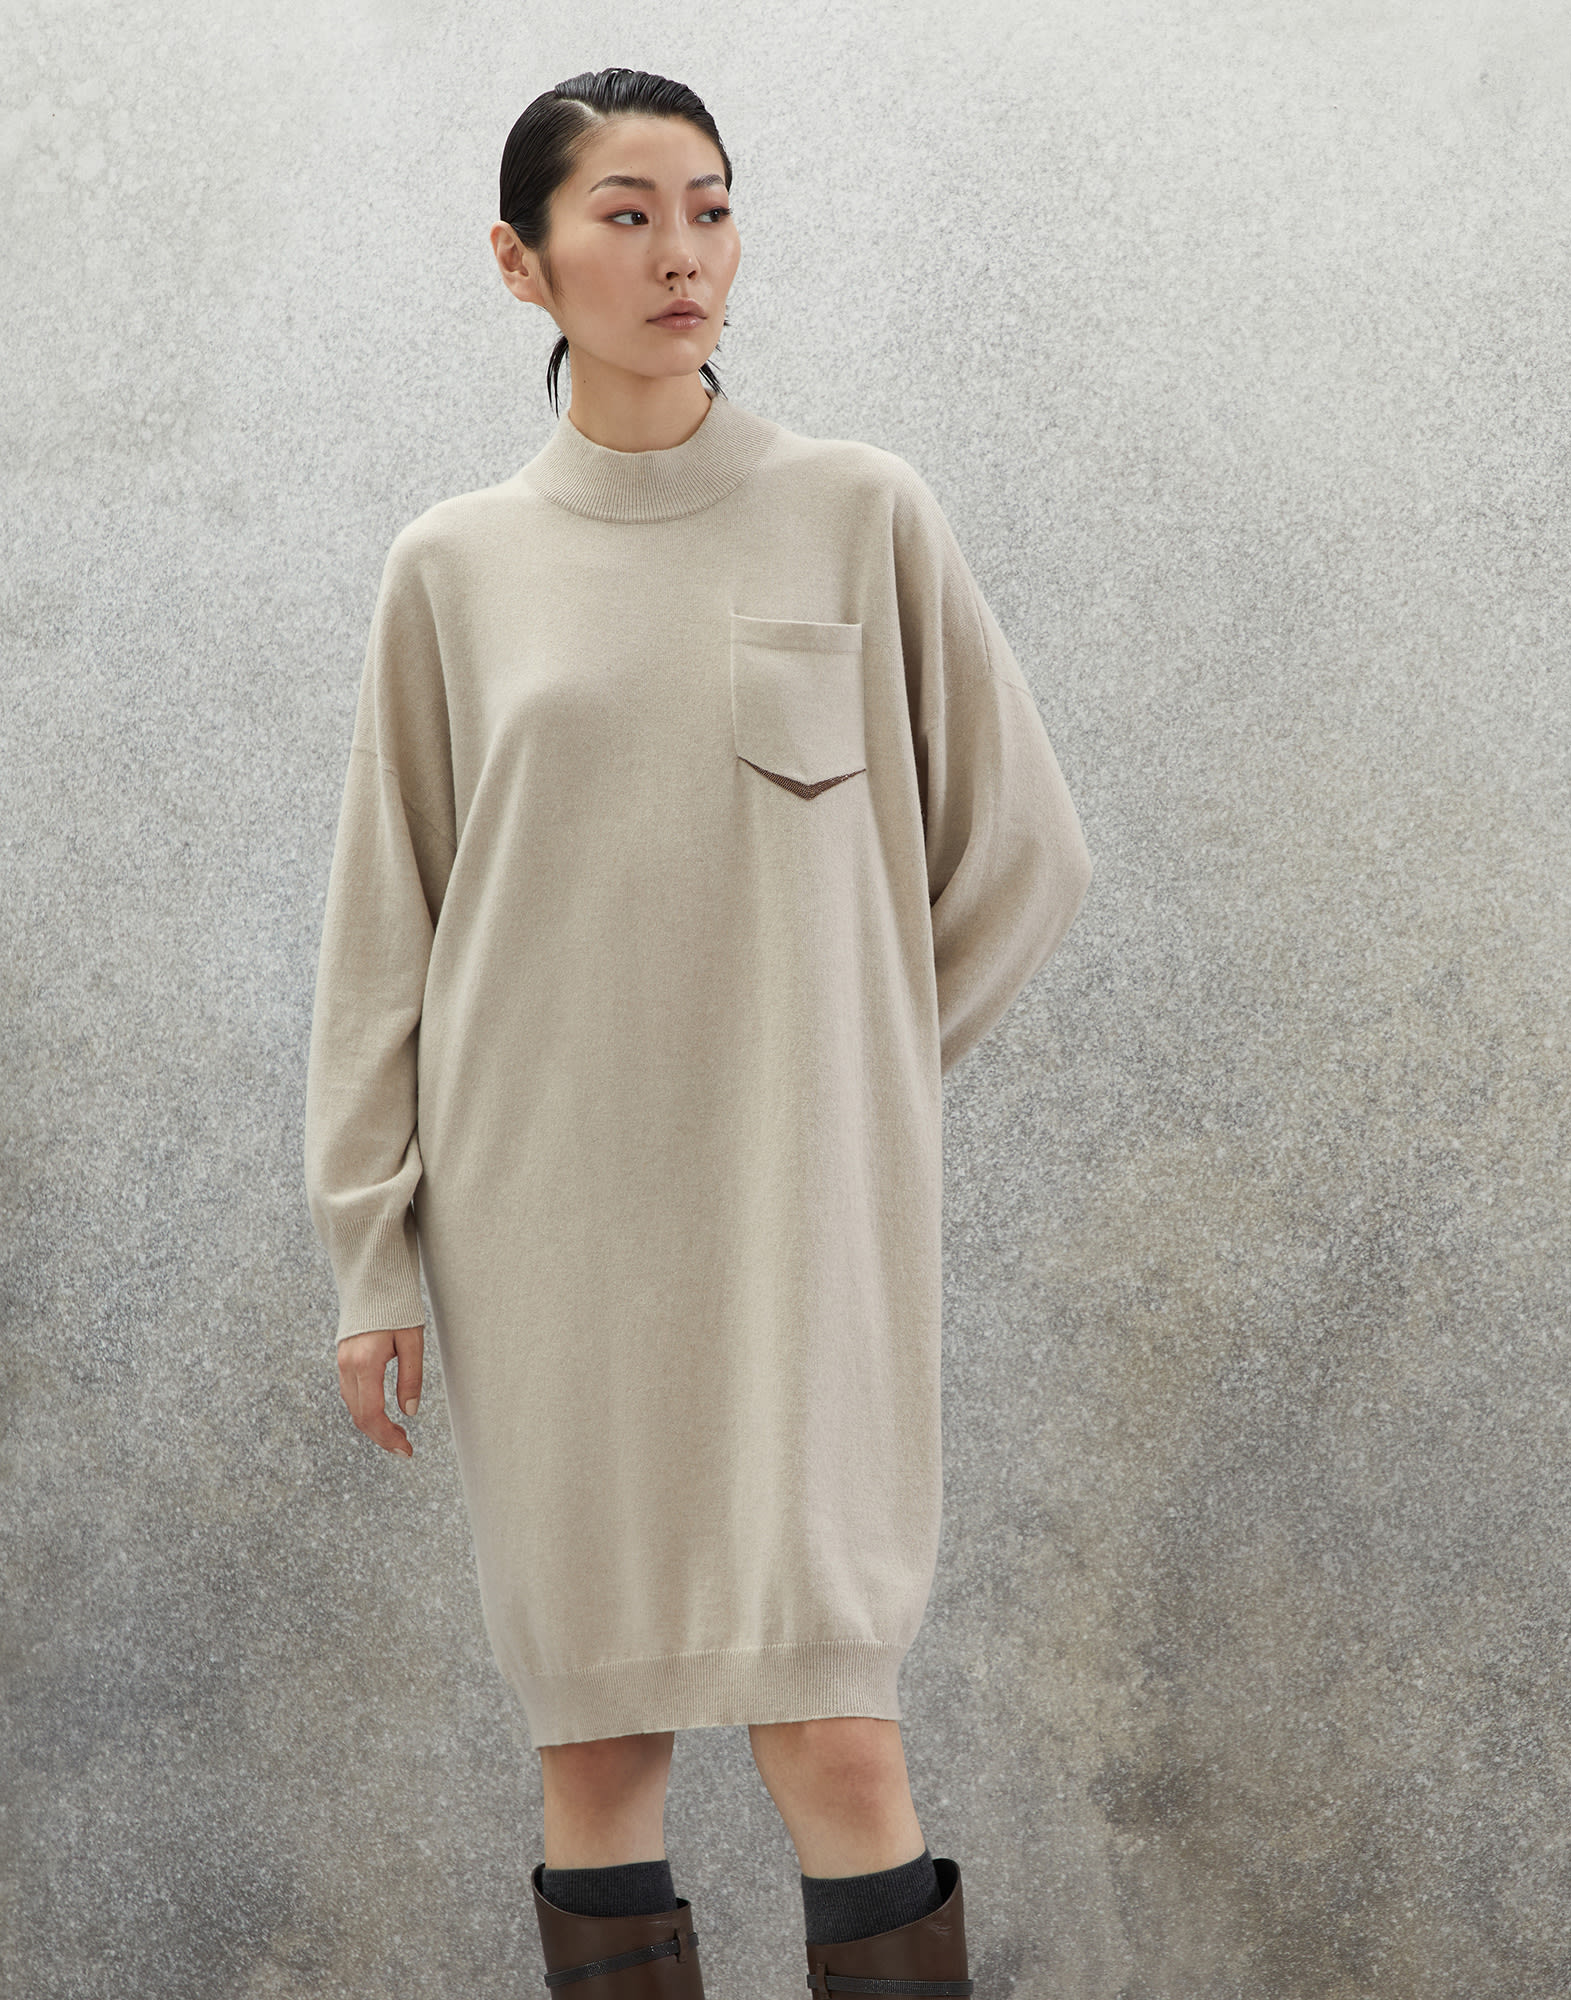 Трикотажное платье из кашемира Холодный Бежевый Женщина - Brunello Cucinelli